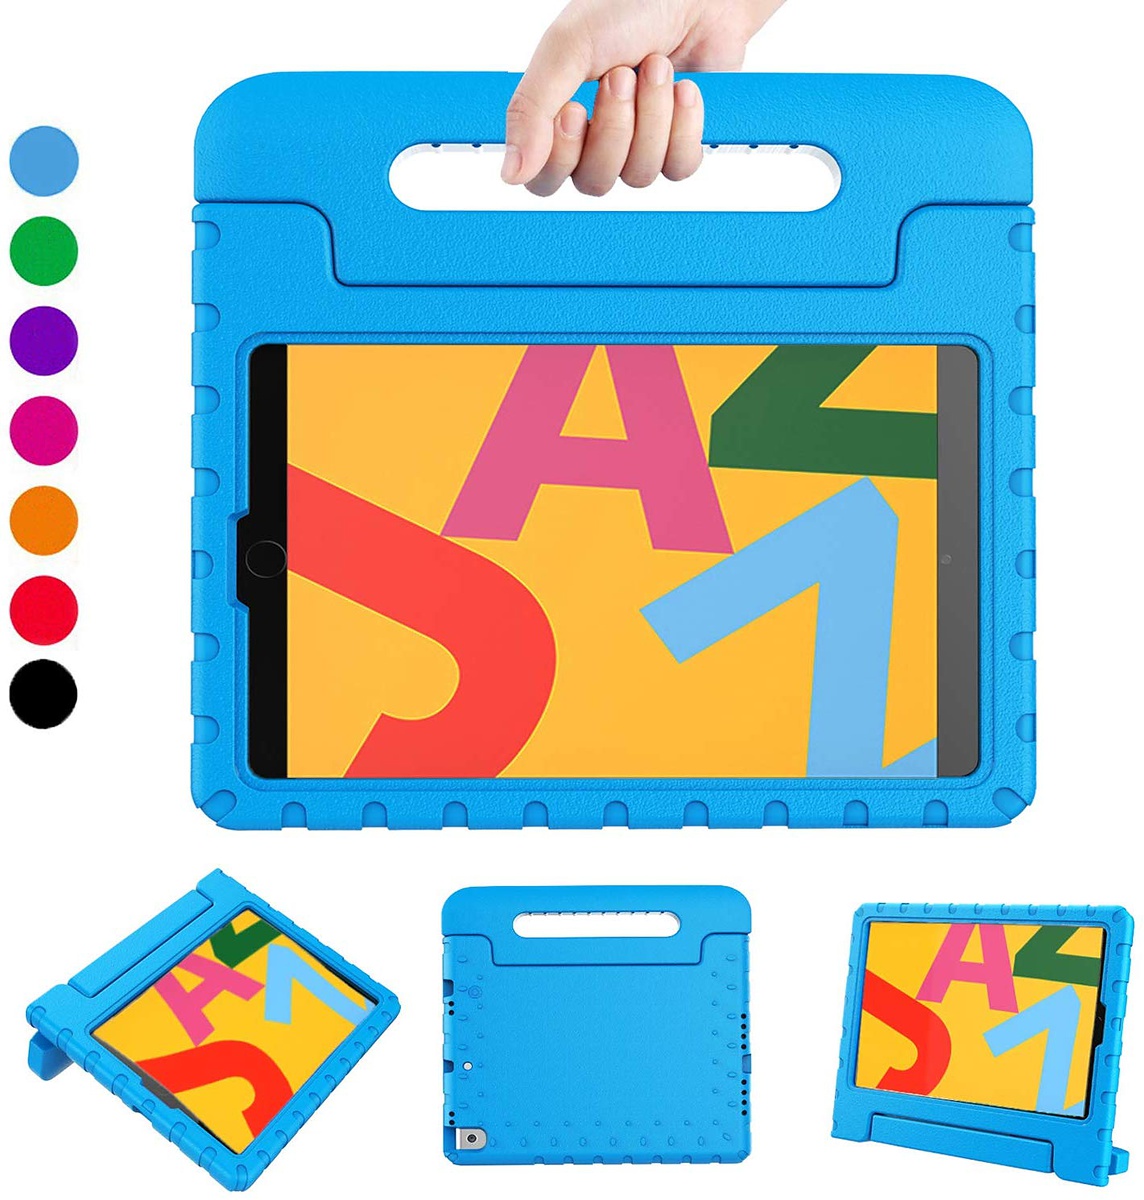 Stöttåligt barnfodral, iPad 10.2 / Pro 10.5 / Air 3 10.5, blå